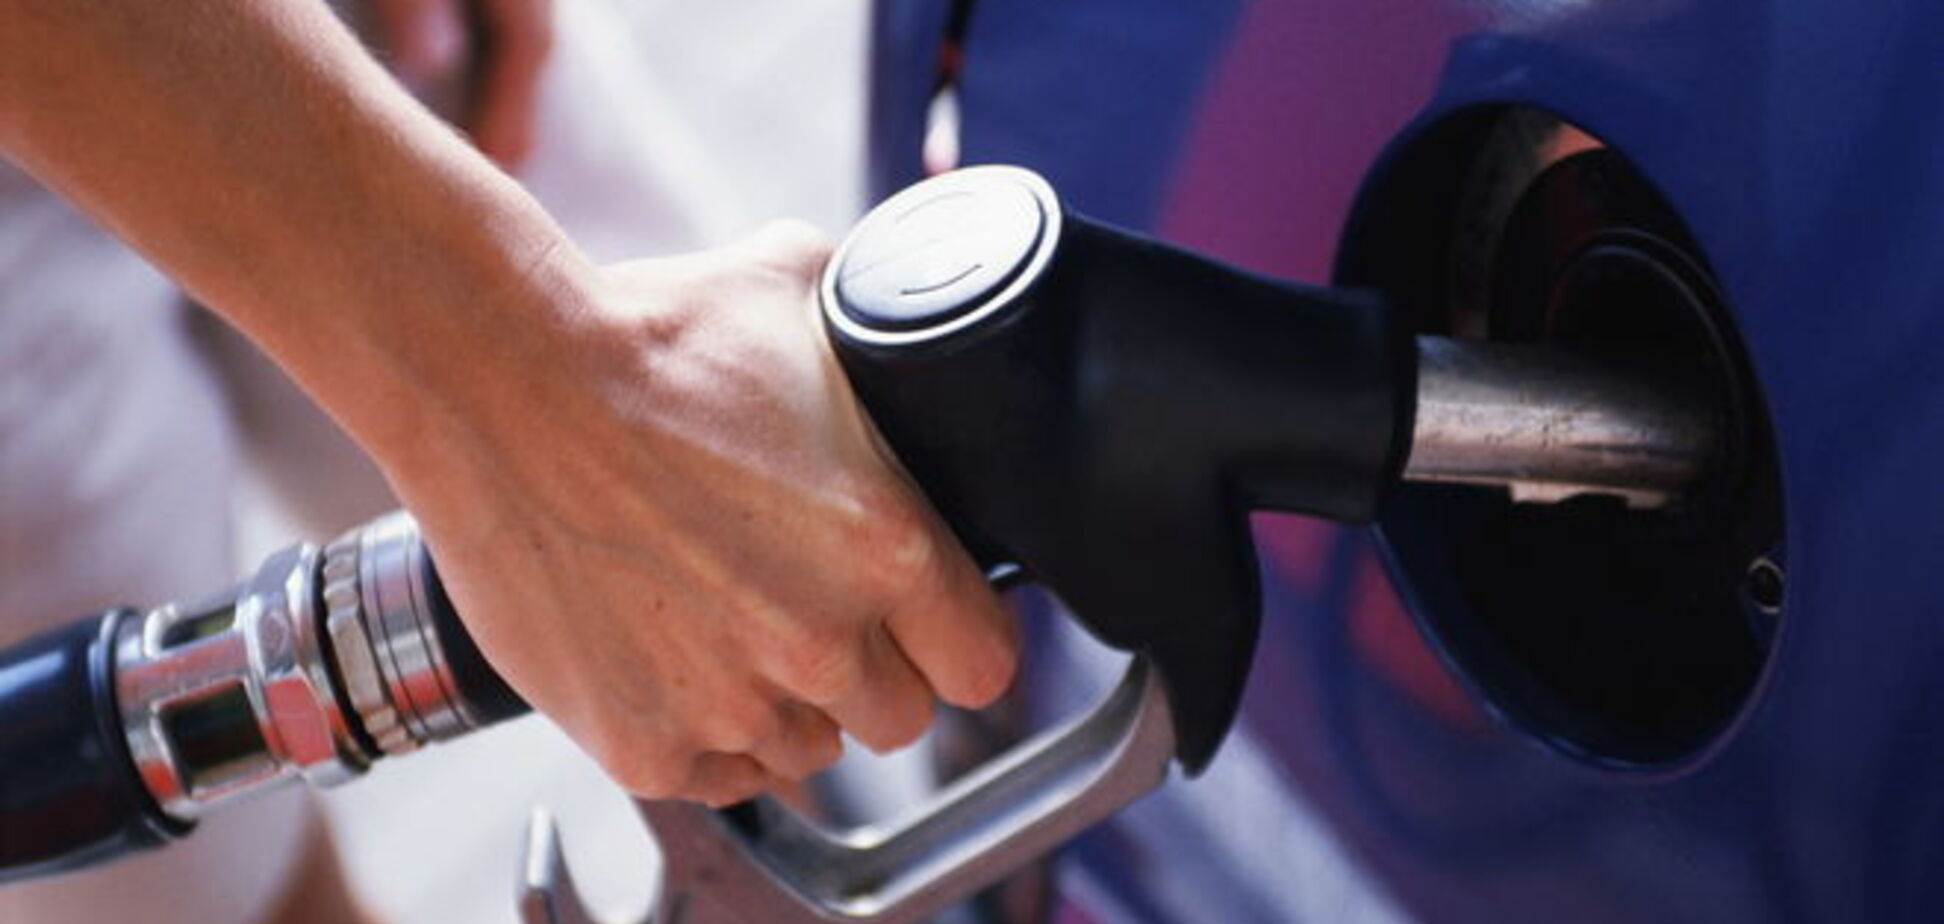 Цены на бензин на украинских АЗС в ближайшее время пойдут в рост